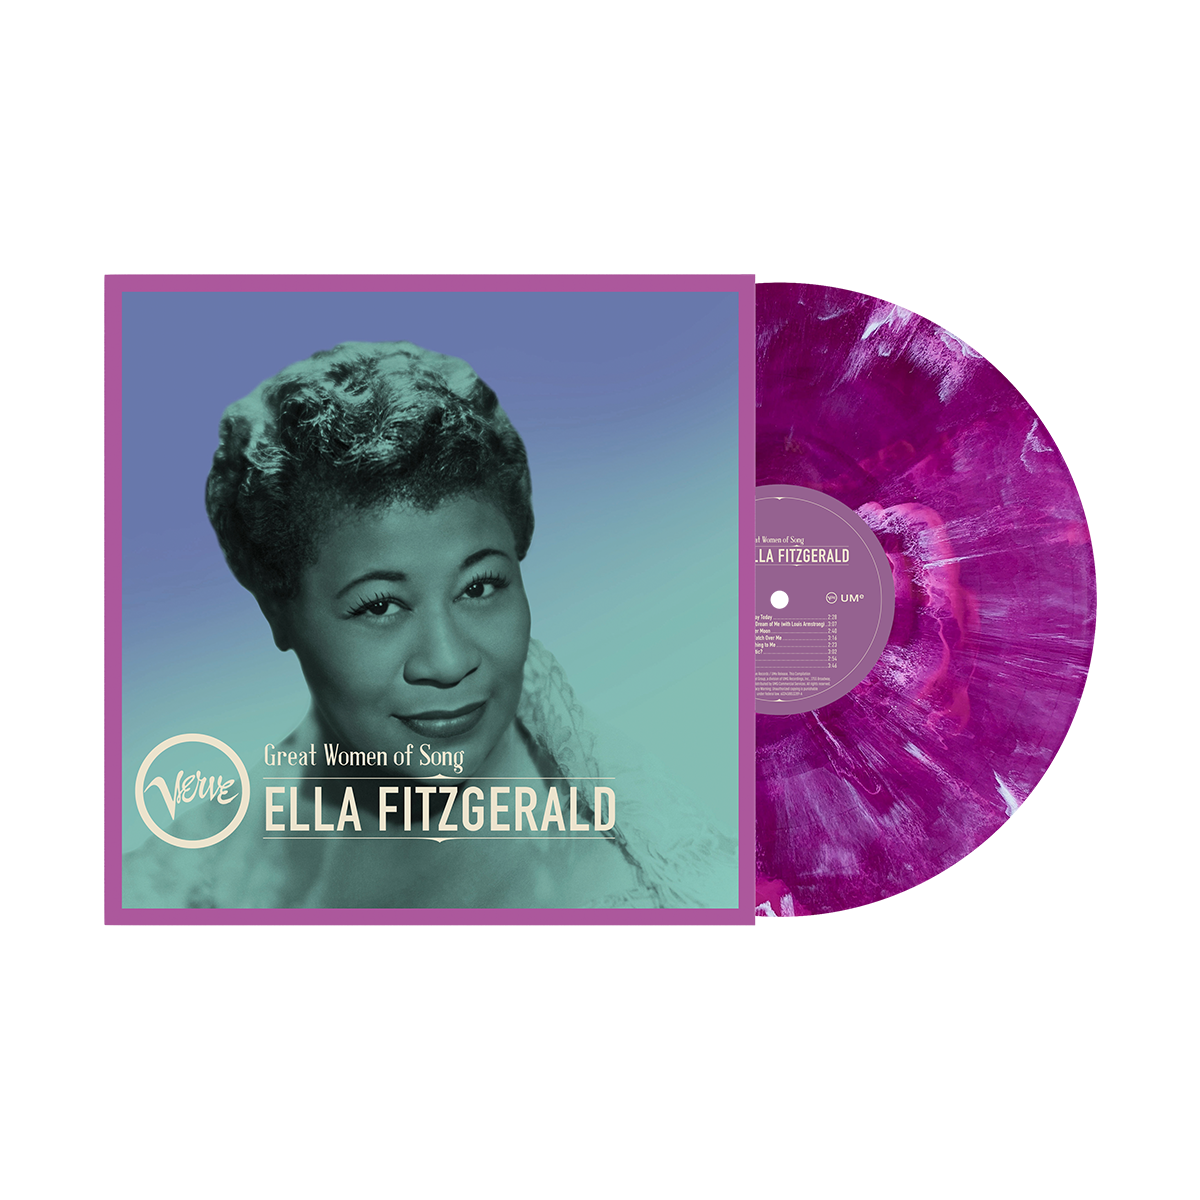 Ella Fitzgerald - Great Women of Song - Ella Fitzgerald: Colour Vinyl LP